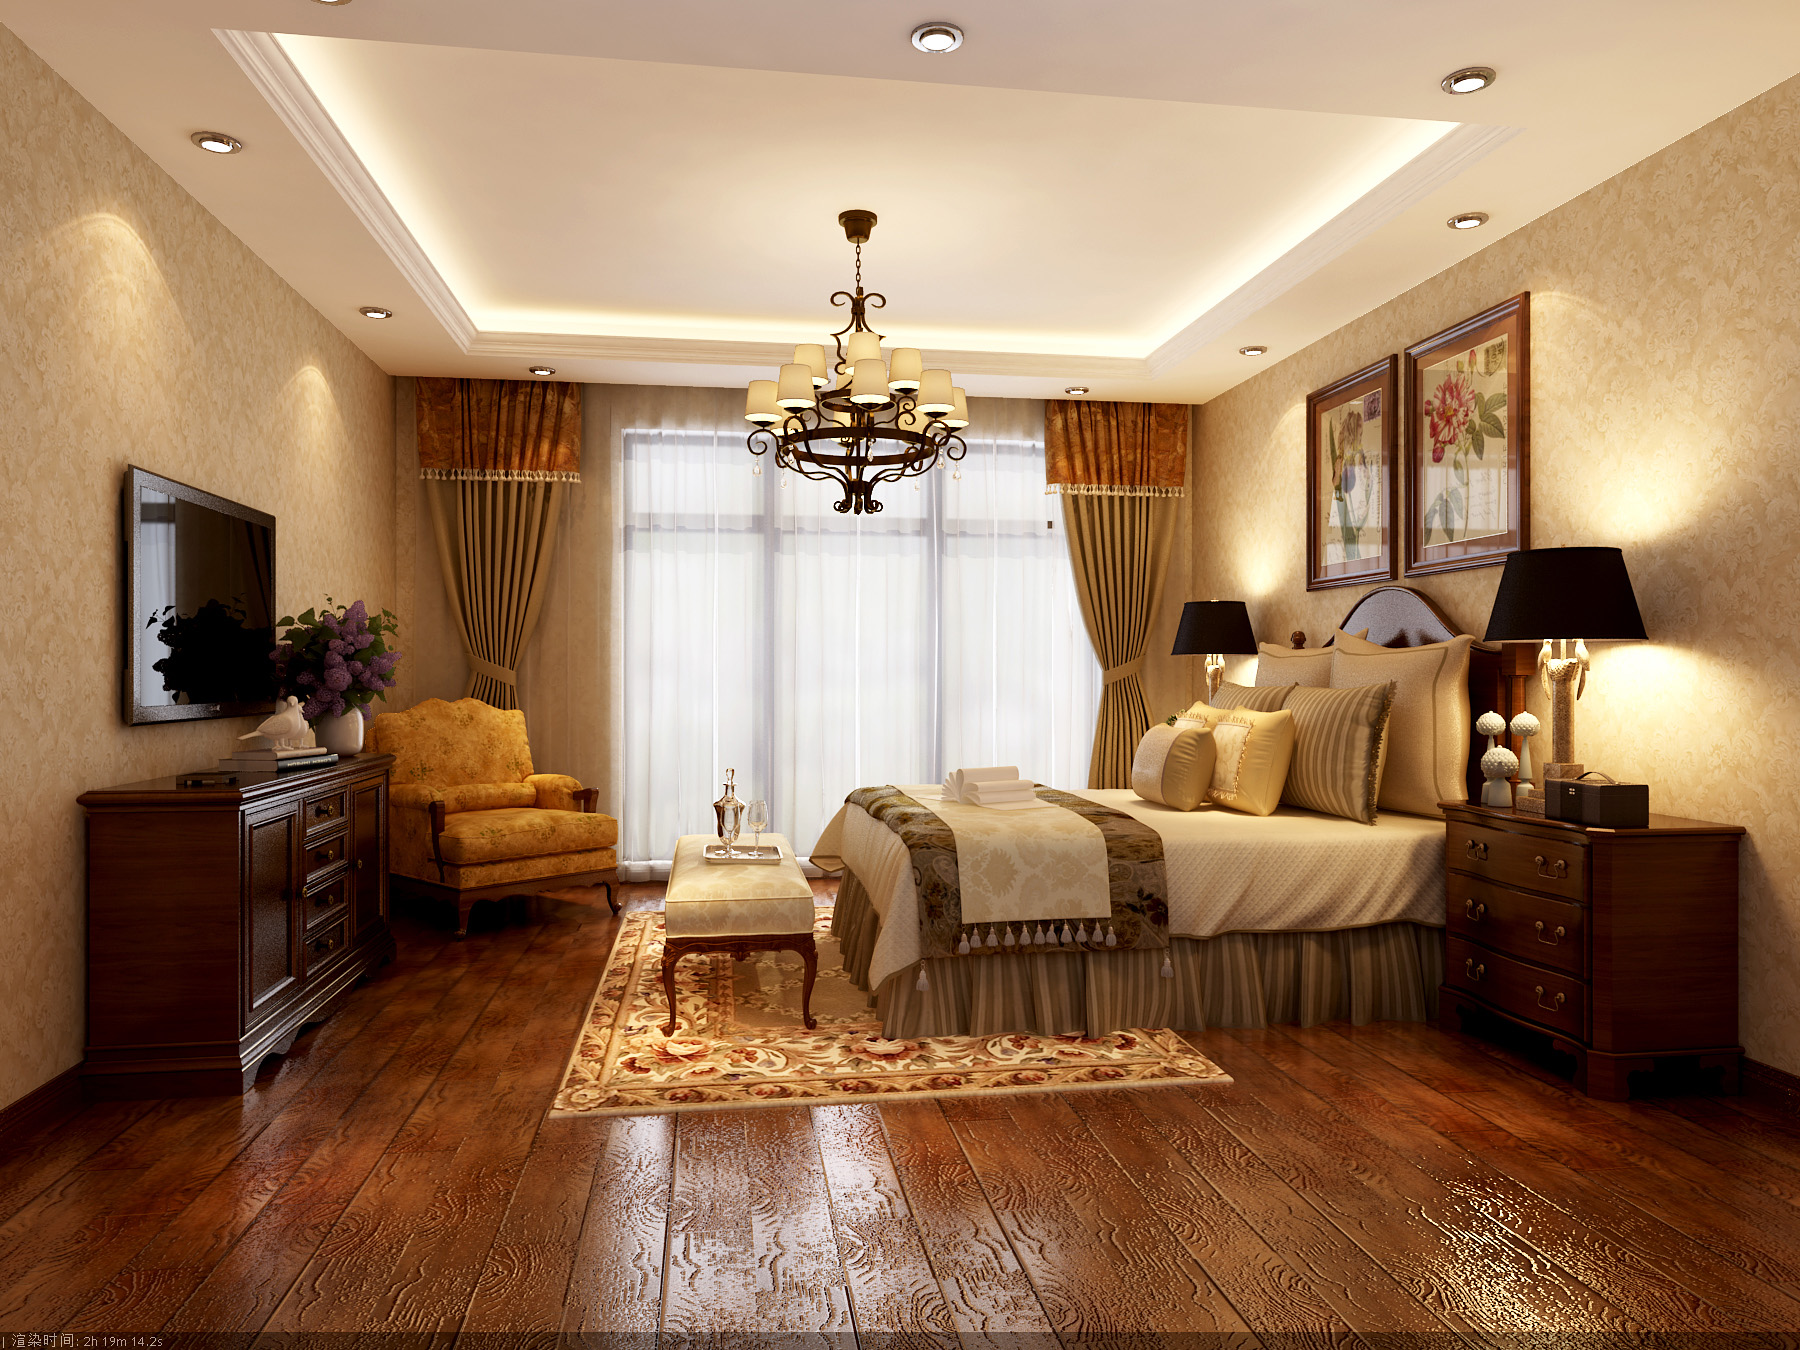 欧式 别墅 卧室图片来自北京今朝装饰刘在恒盛艺墅复式简欧装饰设计的分享